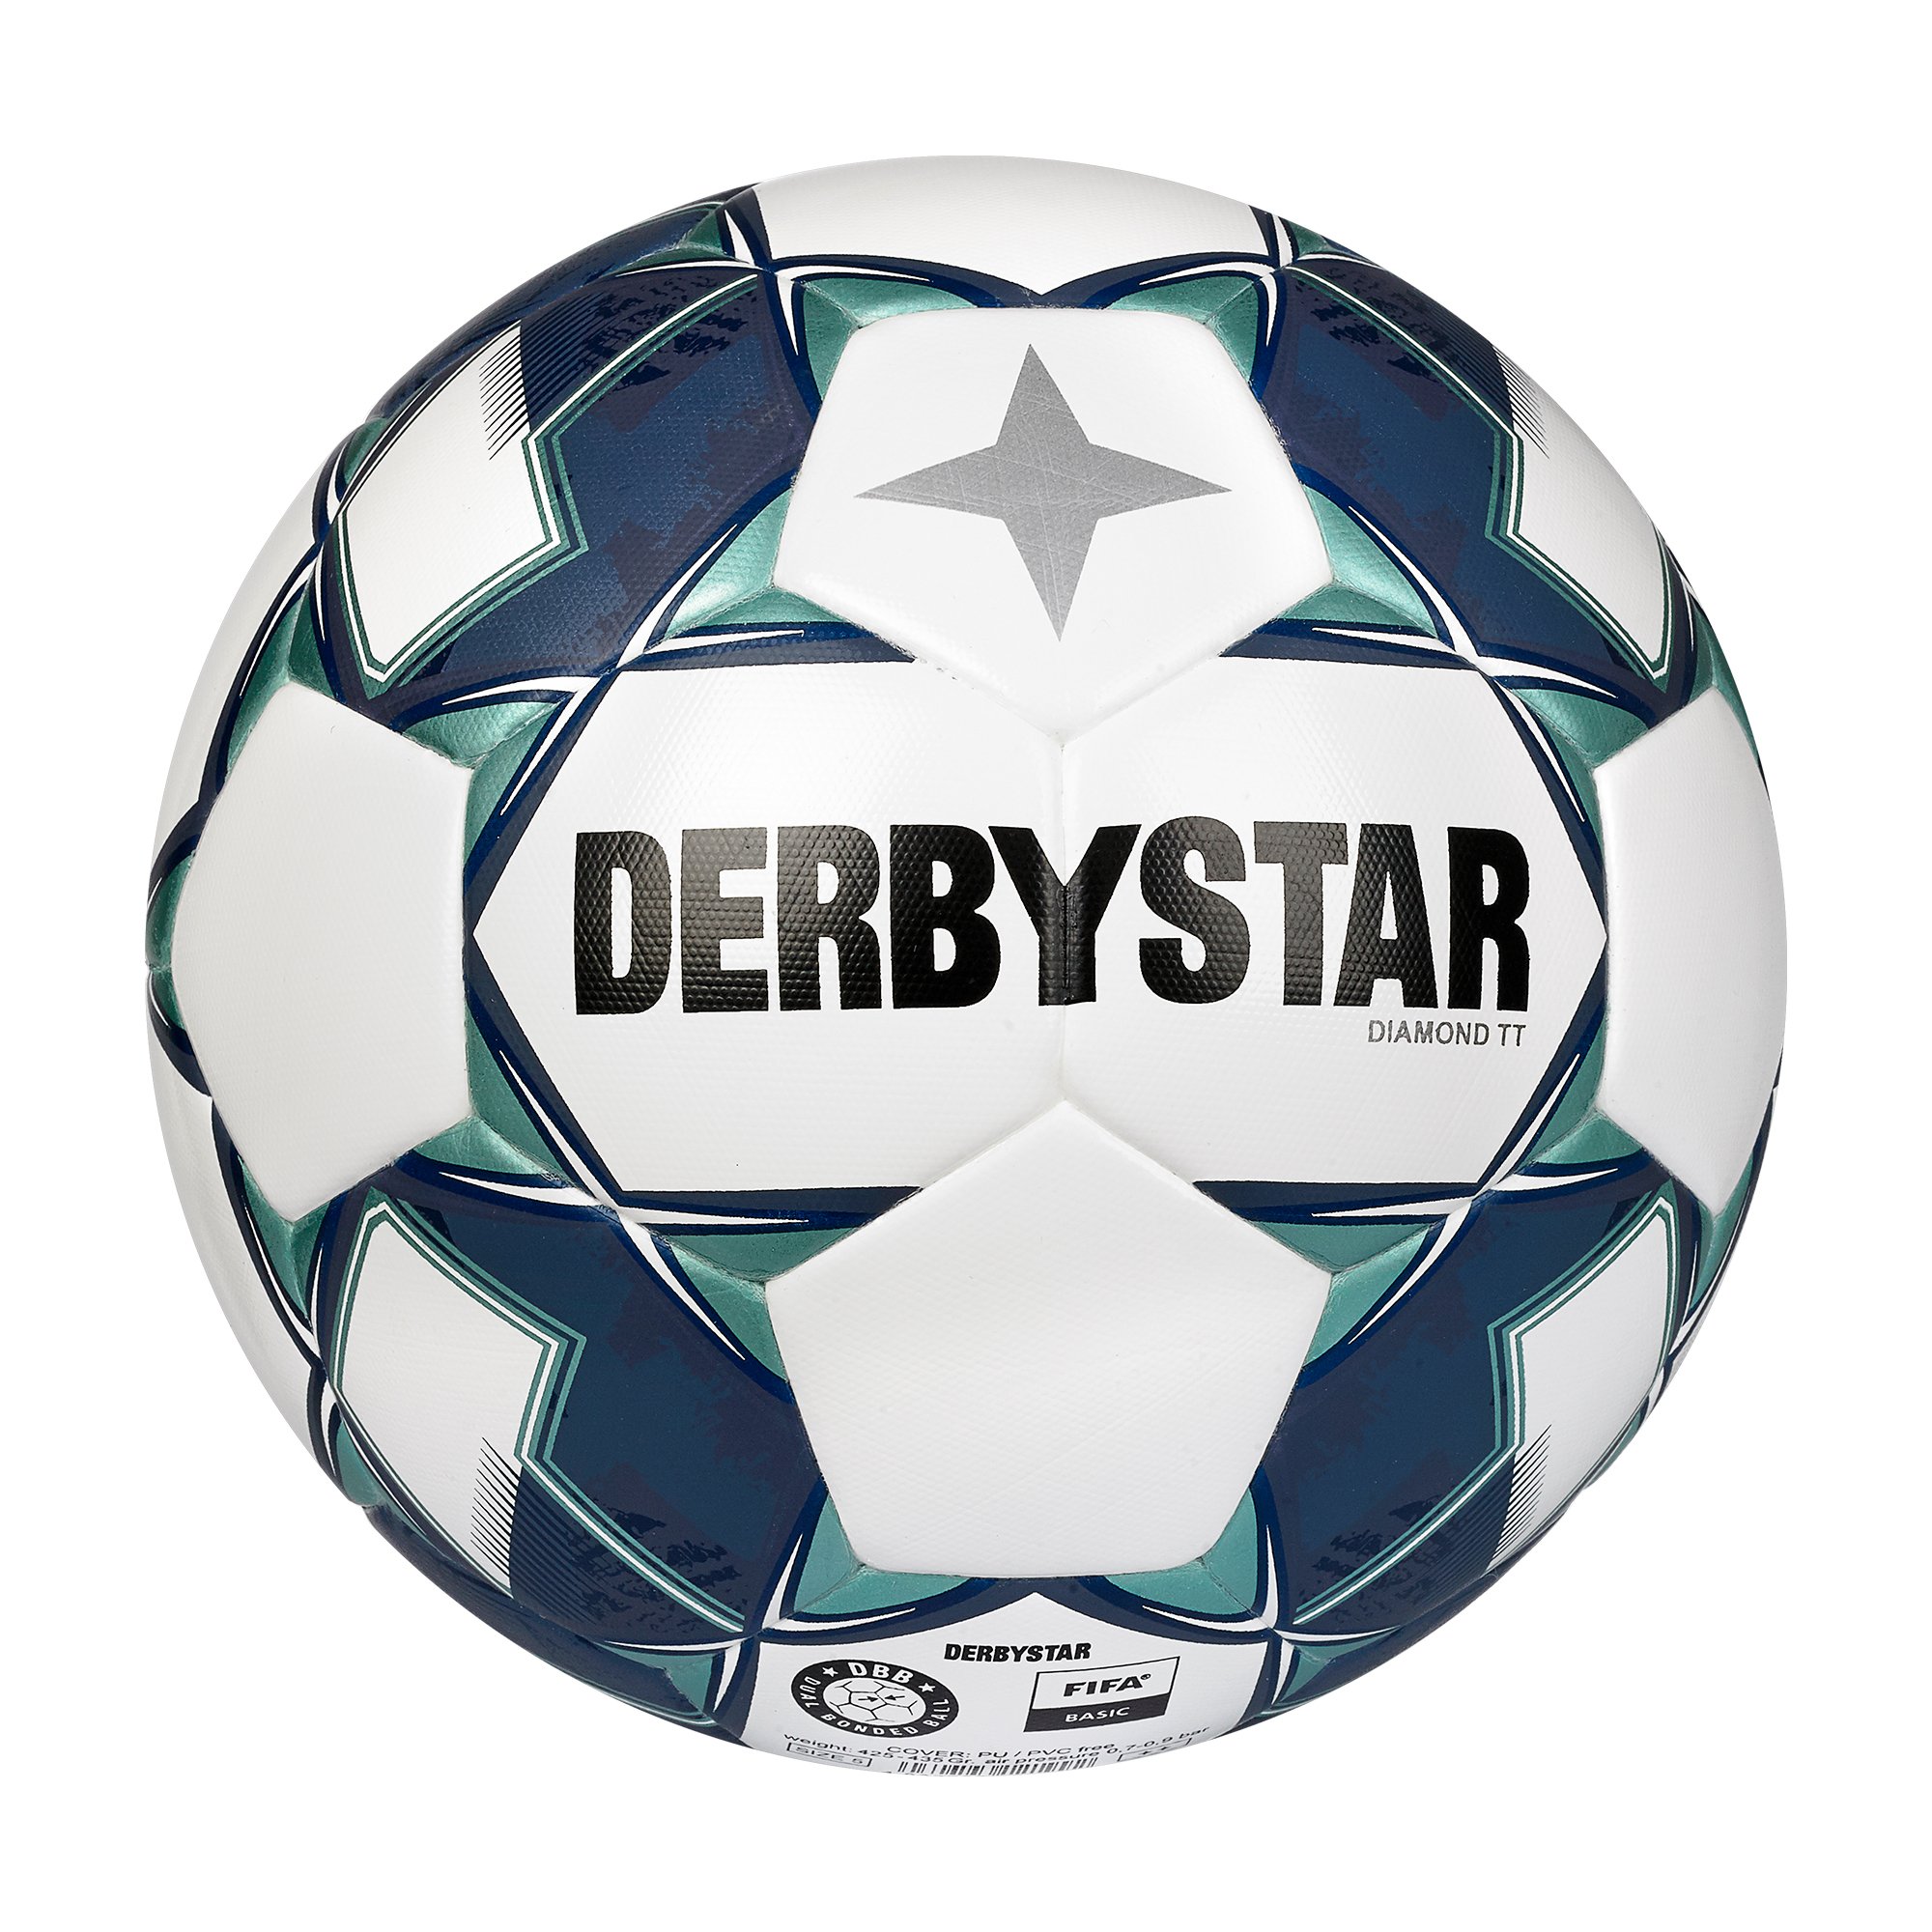 Derbystar Diamond TT DB v22